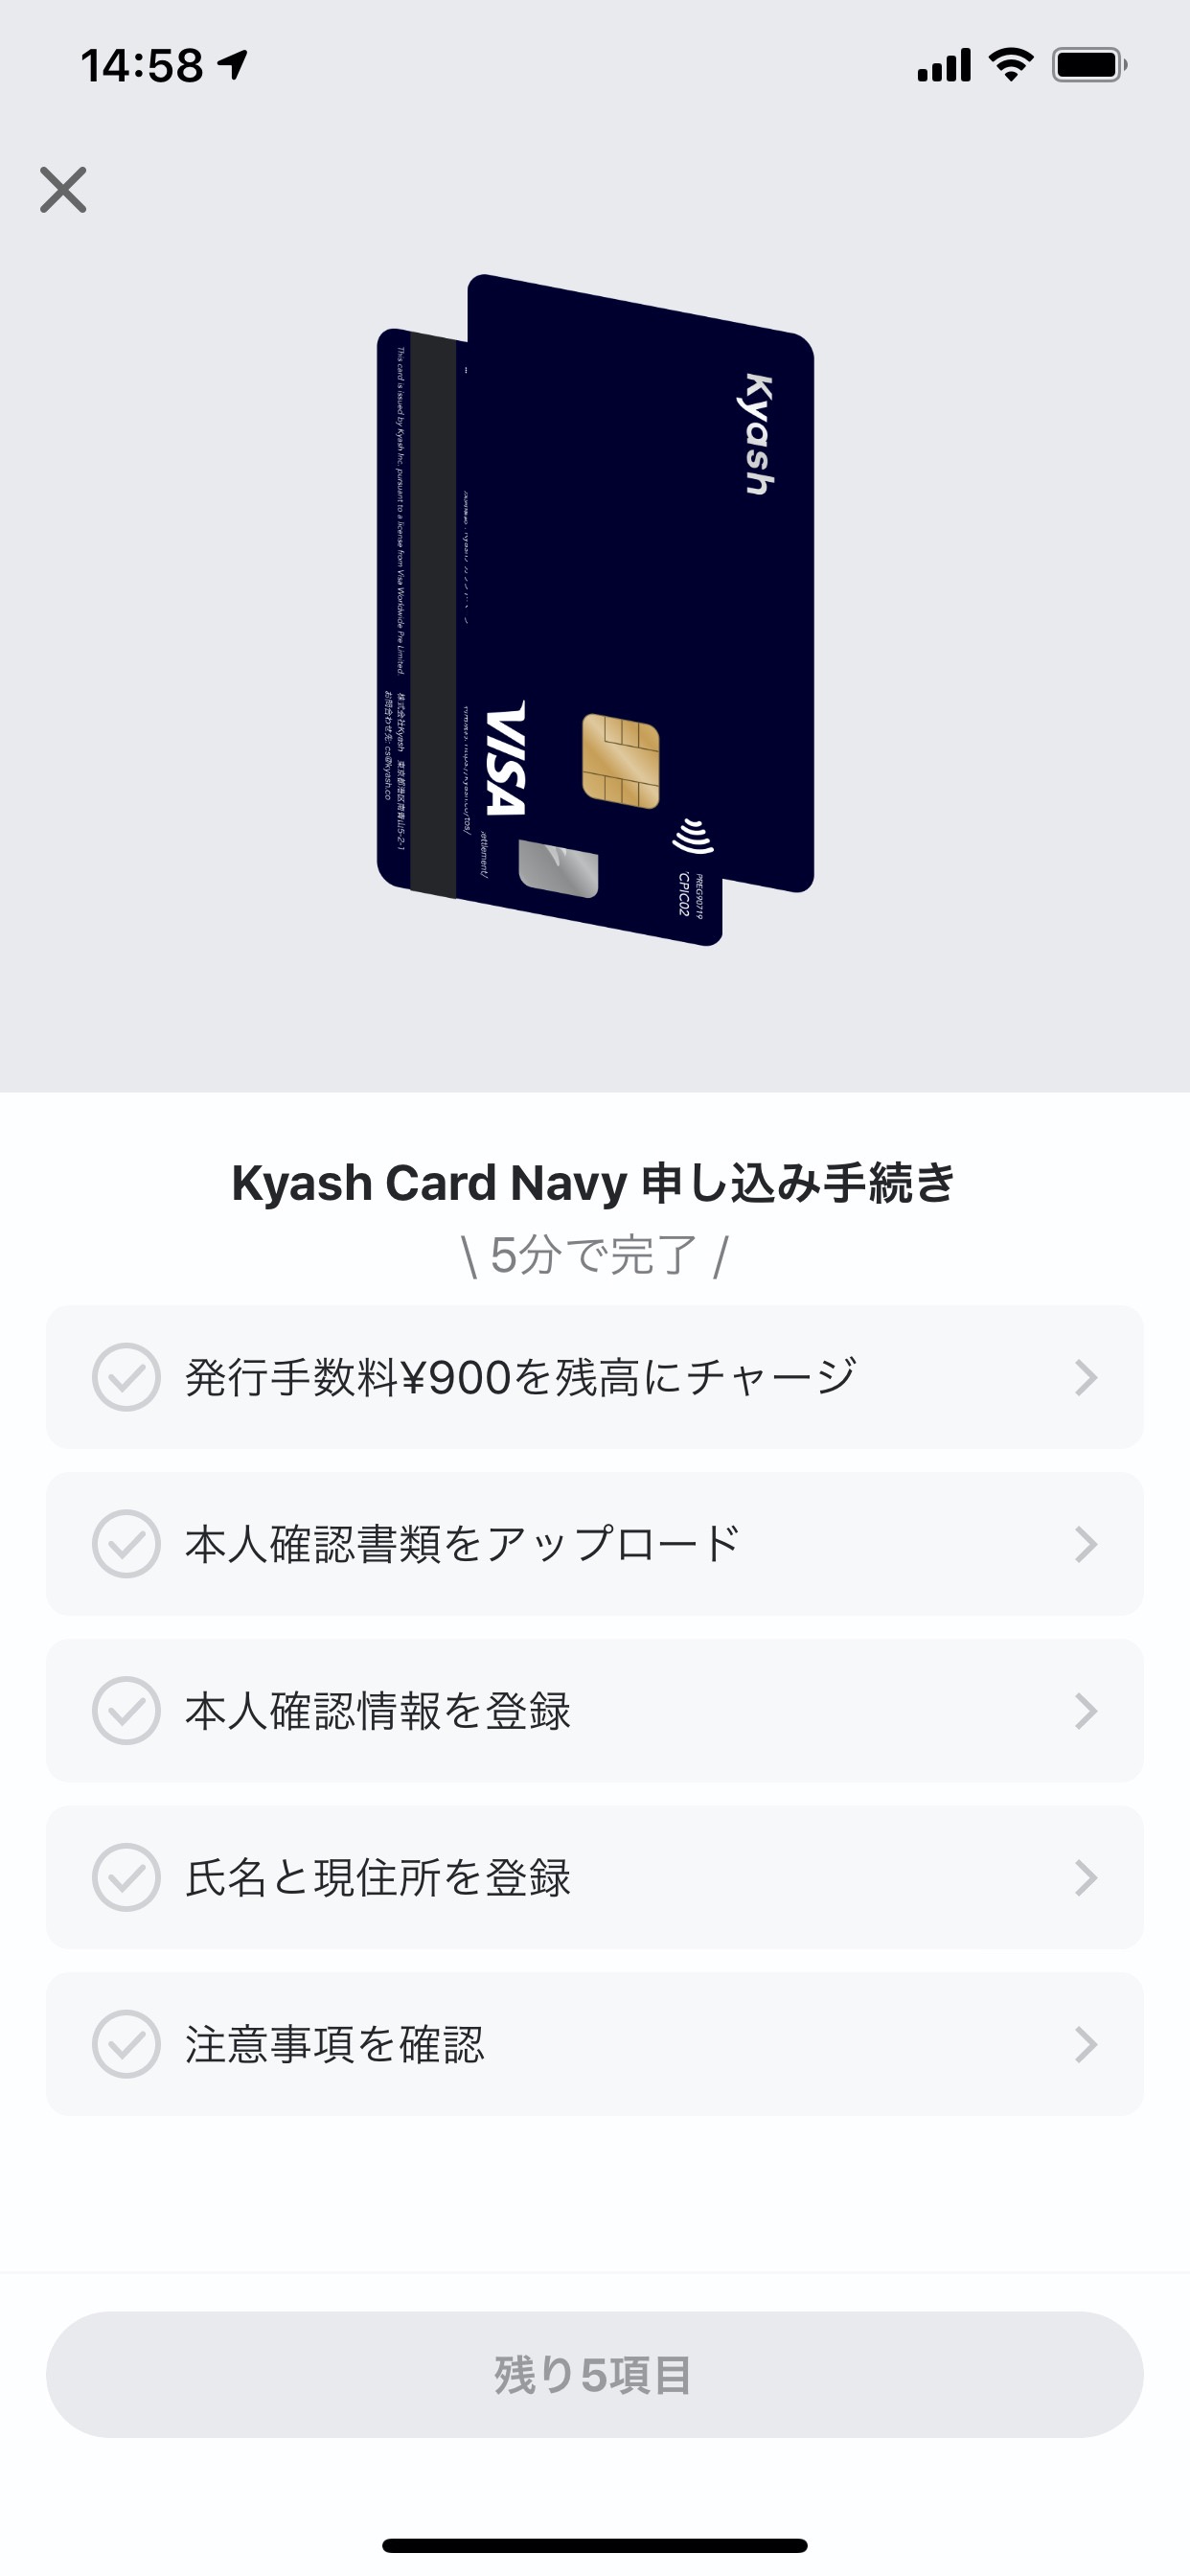 「Kyash Card」を申し込む方法 4